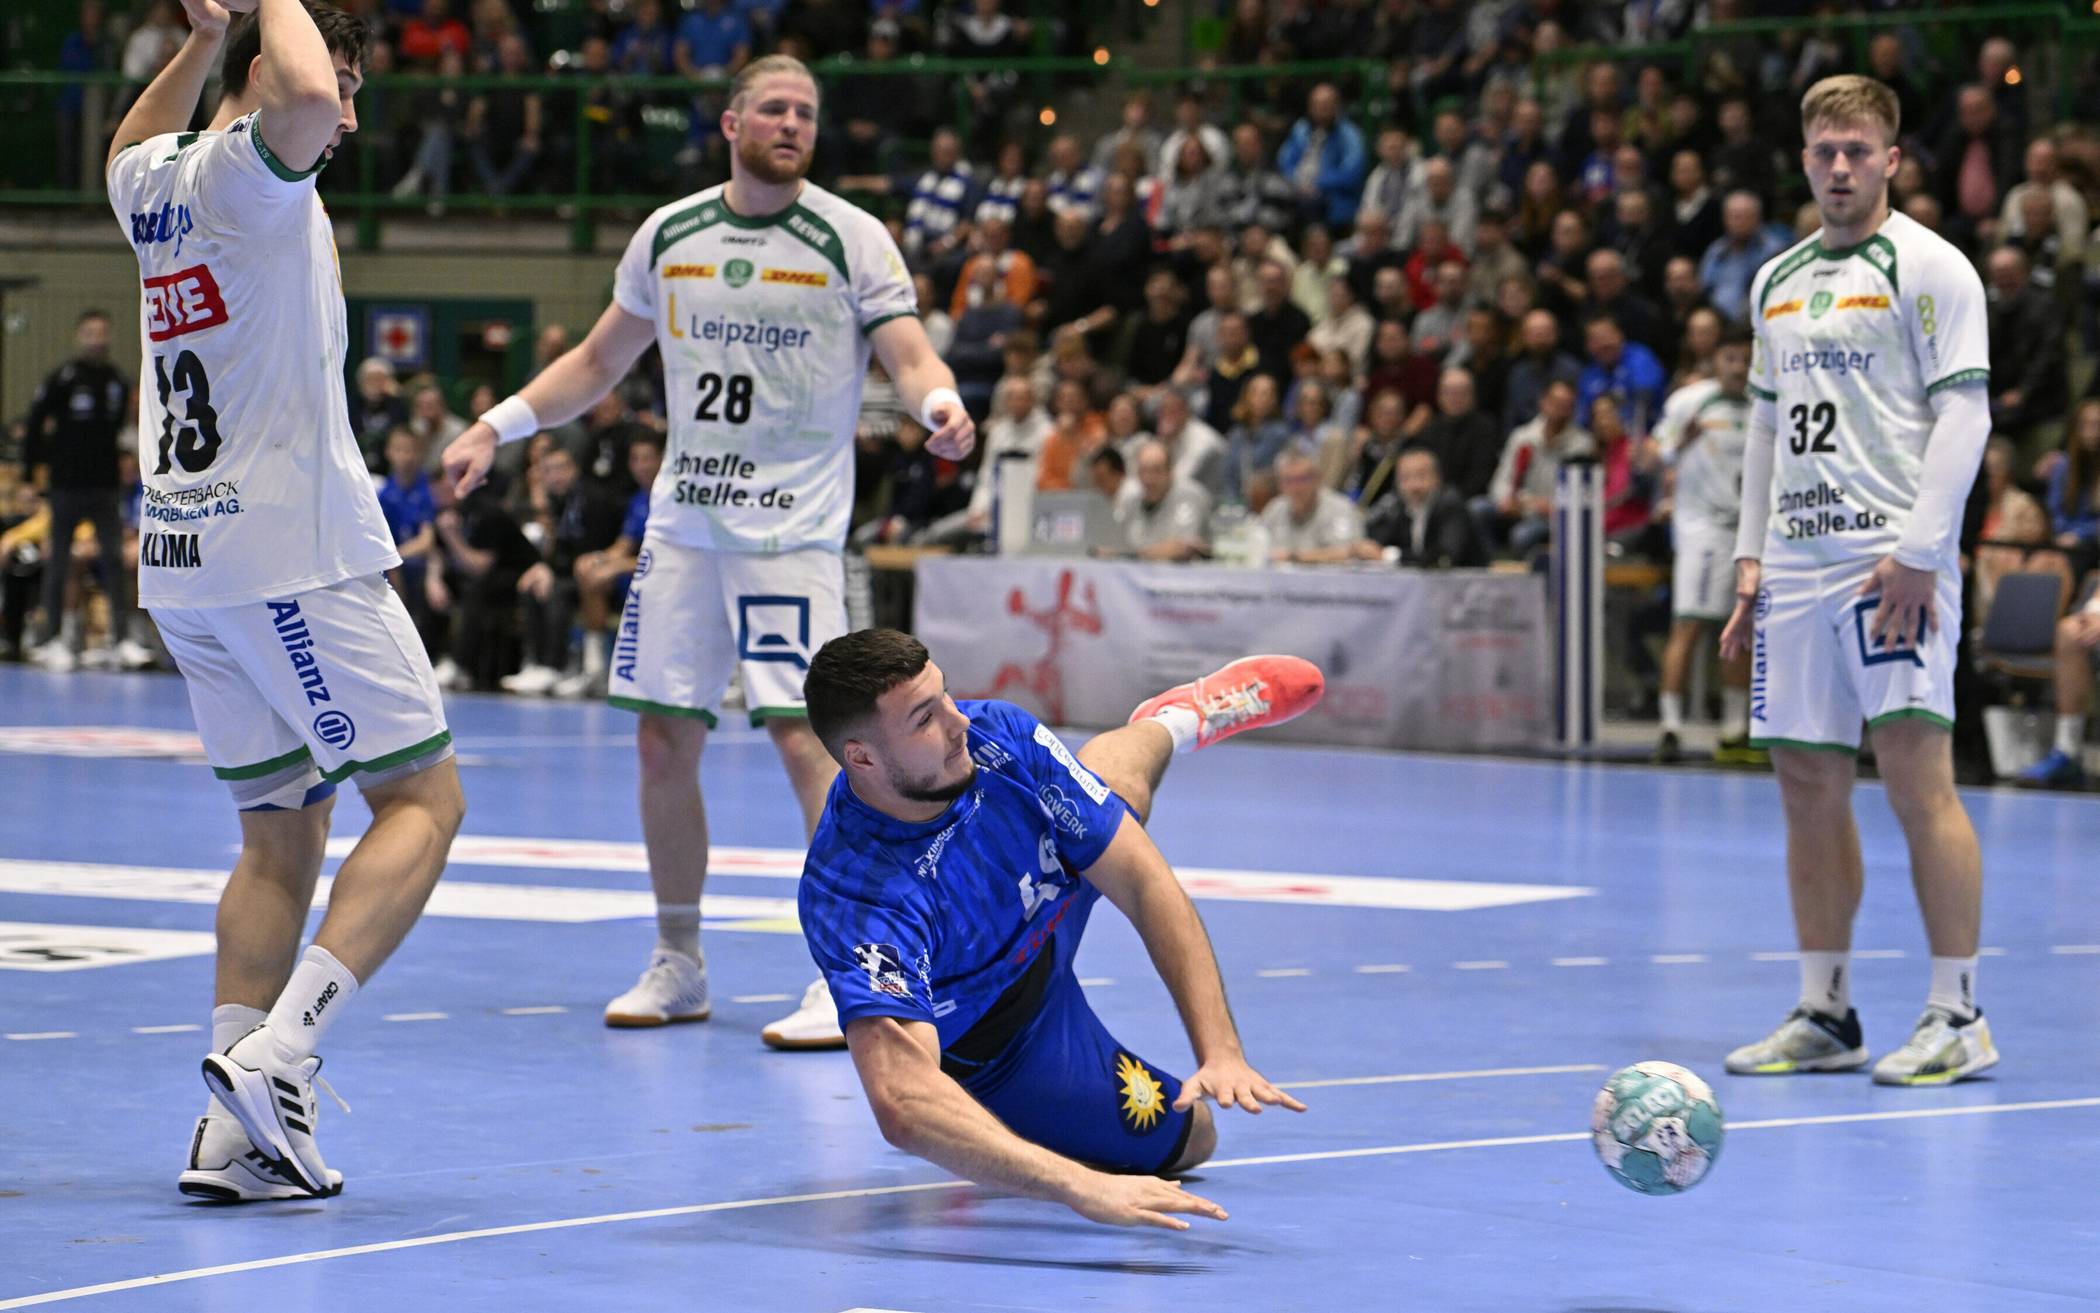 Bilder: Remis des Handball-Bundesligisten BHC gegen Leipzig​